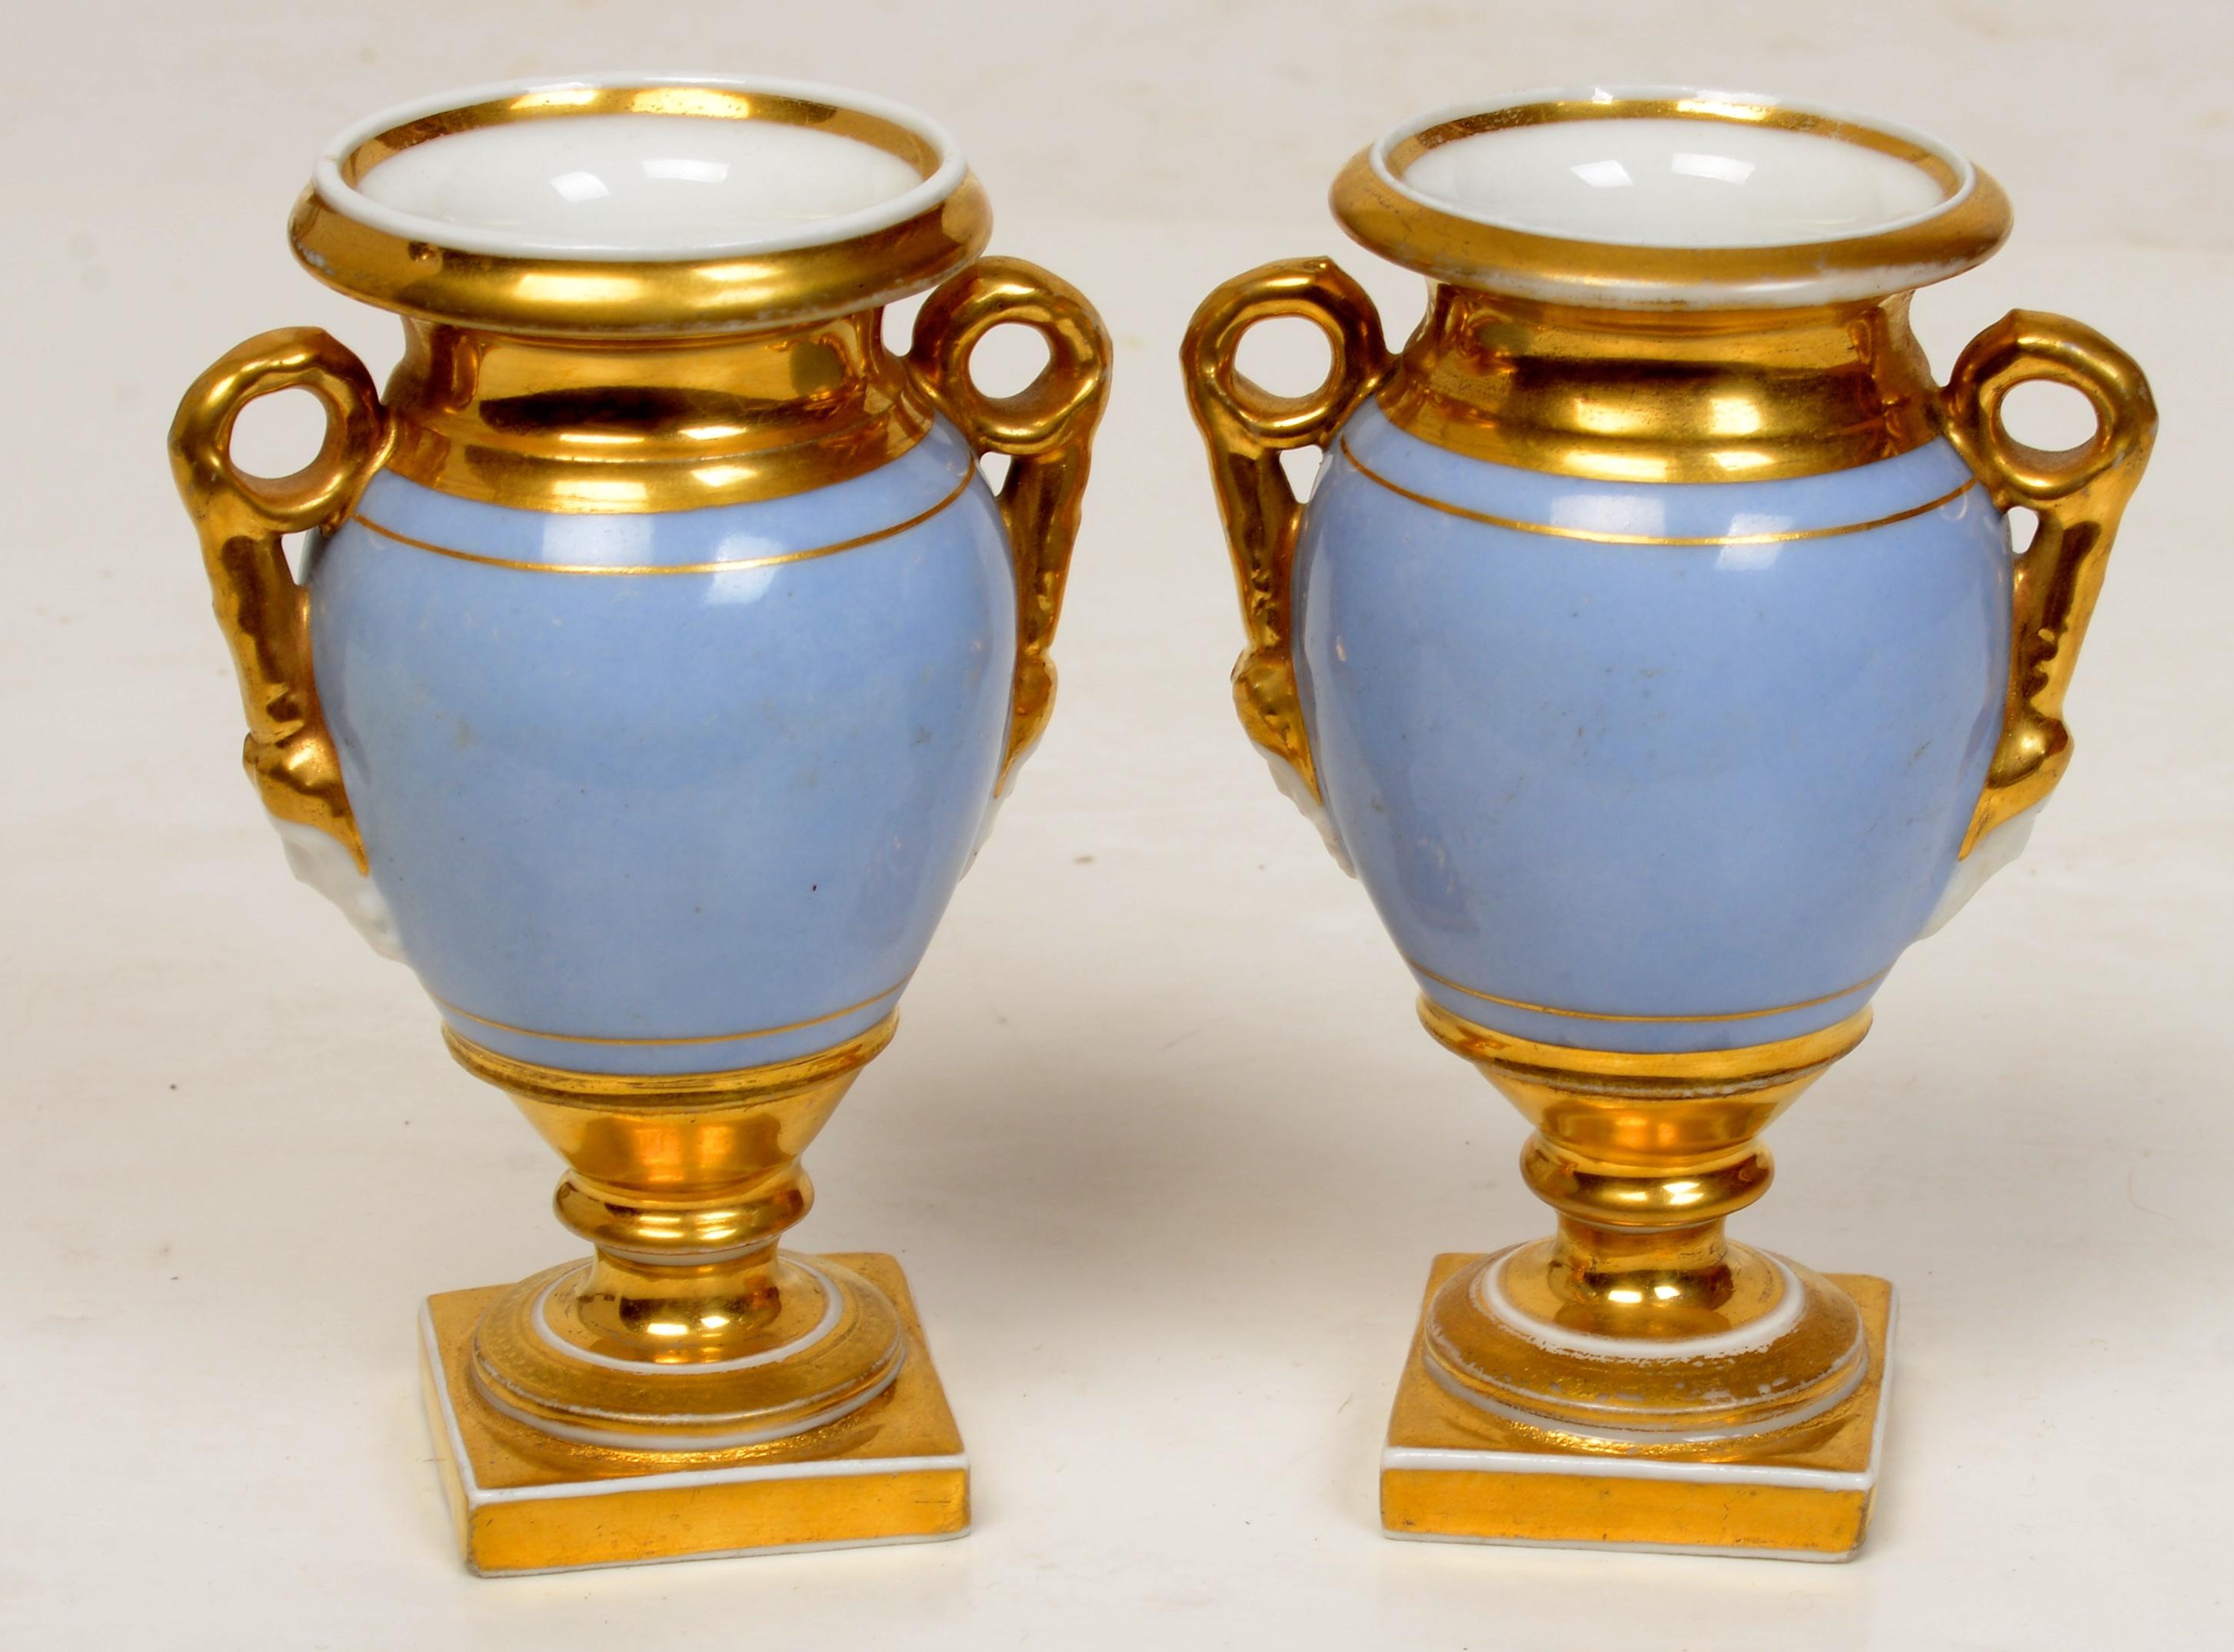 Paar vergoldete Pariser Miniatur-Fußurnen mit Gartenszenen, um 1800. Miniatur-Urnen dieser Art sind selten und die Verzierung ist außergewöhnlich. Die Urnen haben eine geschraubte Konstruktion mit geschwungenen Griffen und geformten Gesichtsmasken.